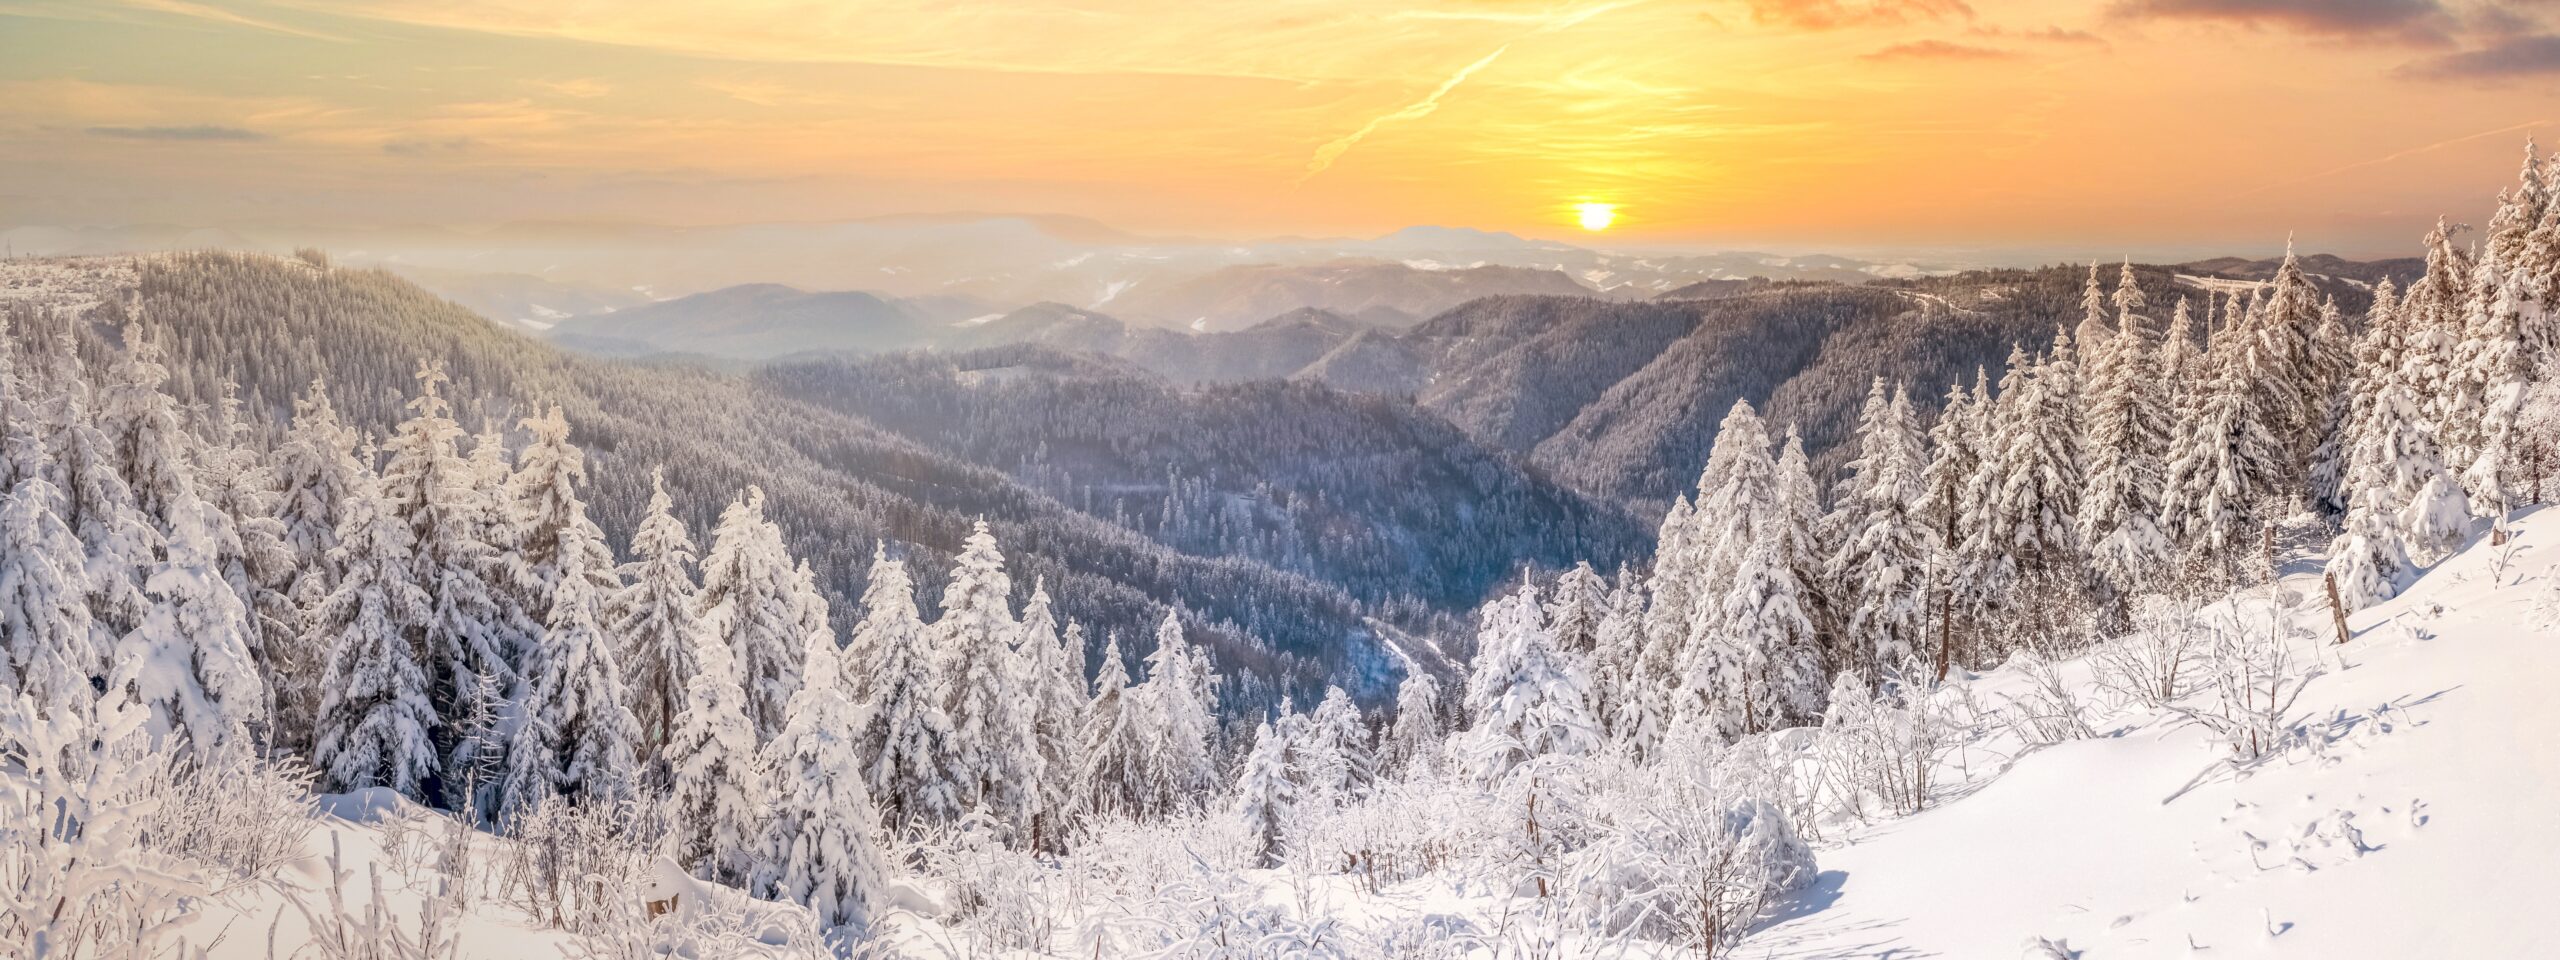 Winterliche Landschaft im Advent